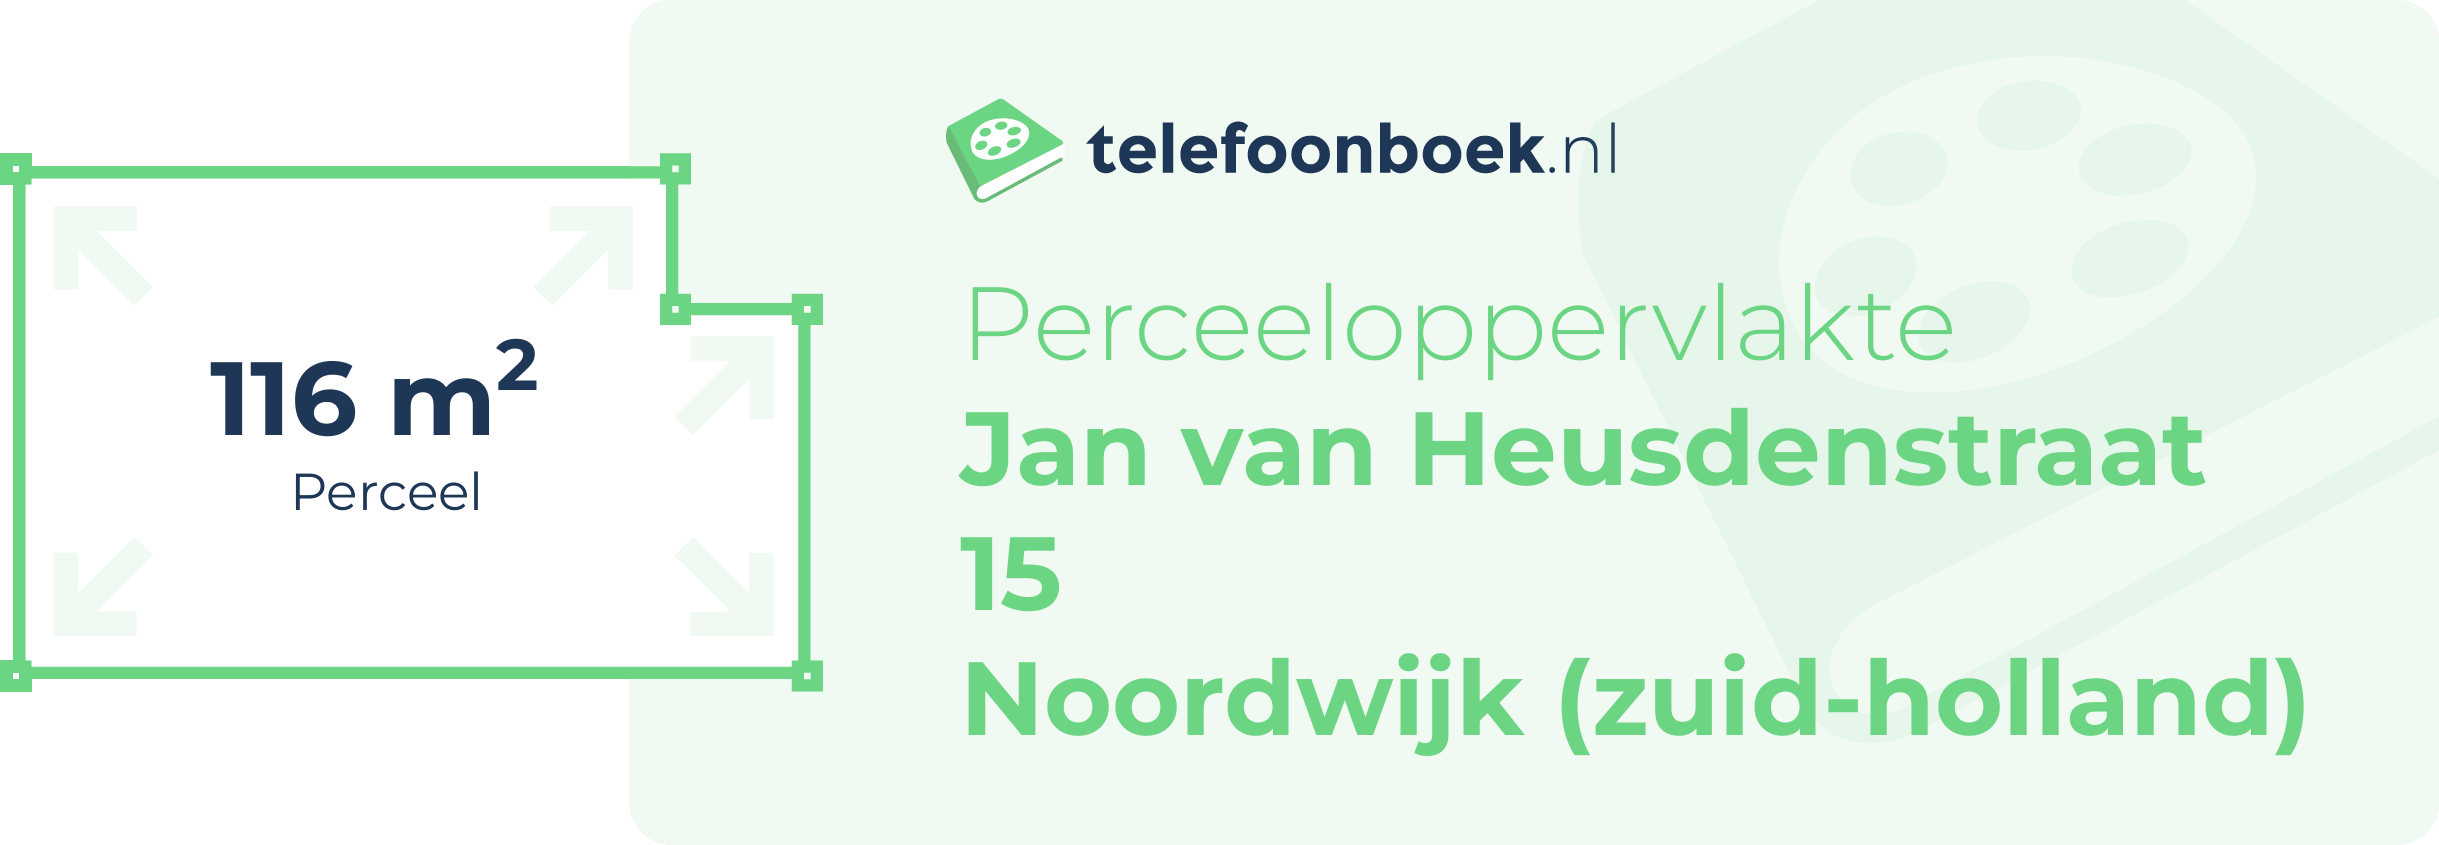 Perceeloppervlakte Jan Van Heusdenstraat 15 Noordwijk (Zuid-Holland)